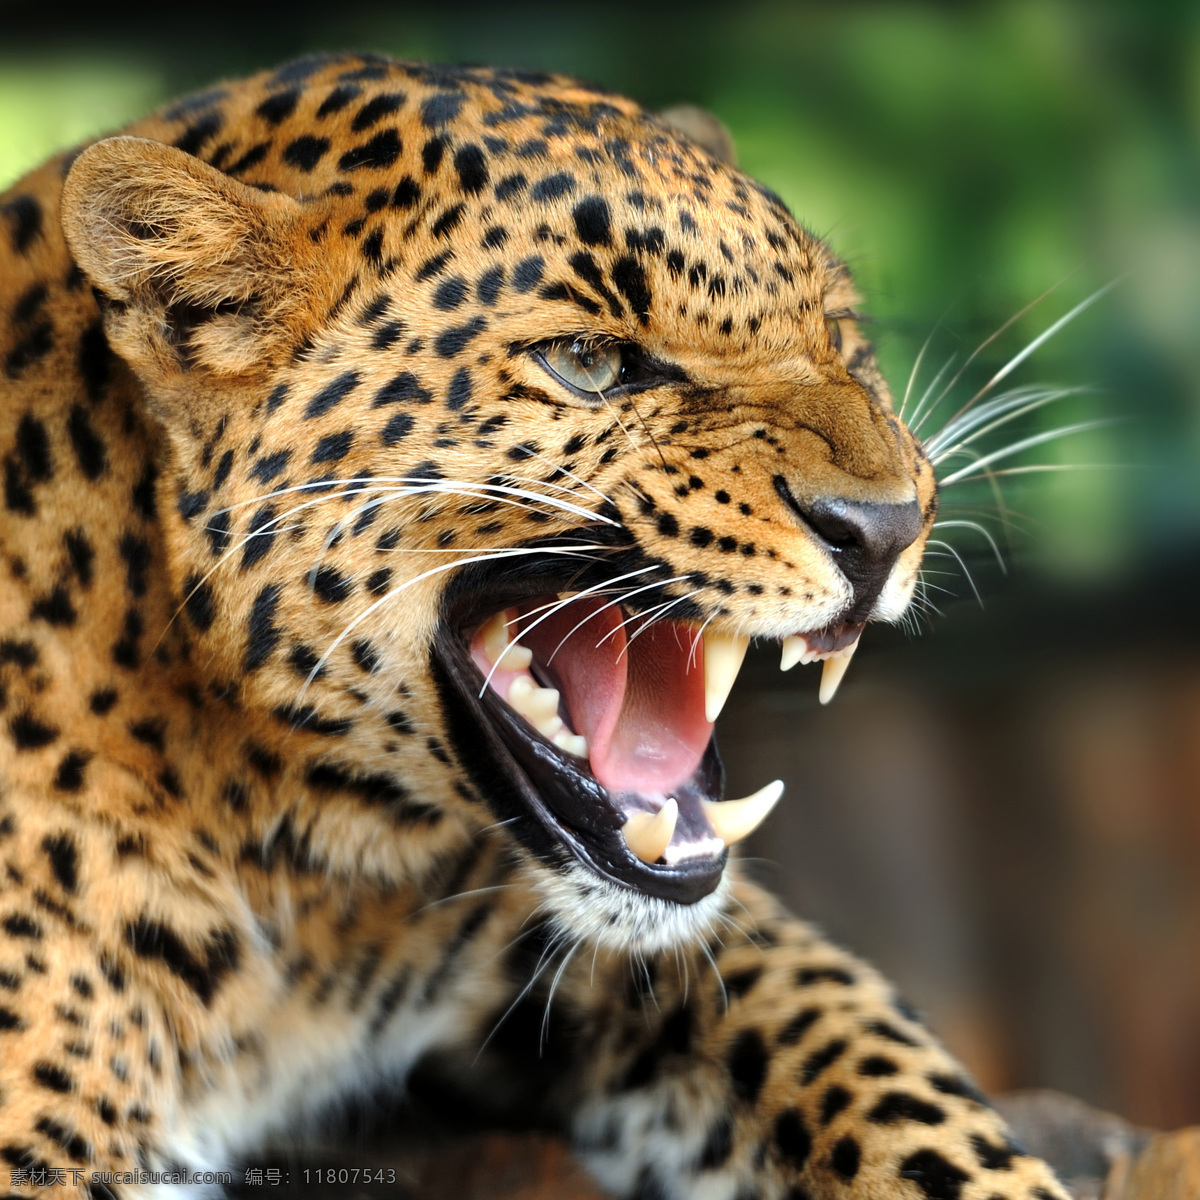 发怒 猎豹 豹子 吼叫 嚎叫 金钱豹 动物世界 野生动物 陆地动物 动物摄影 生物世界